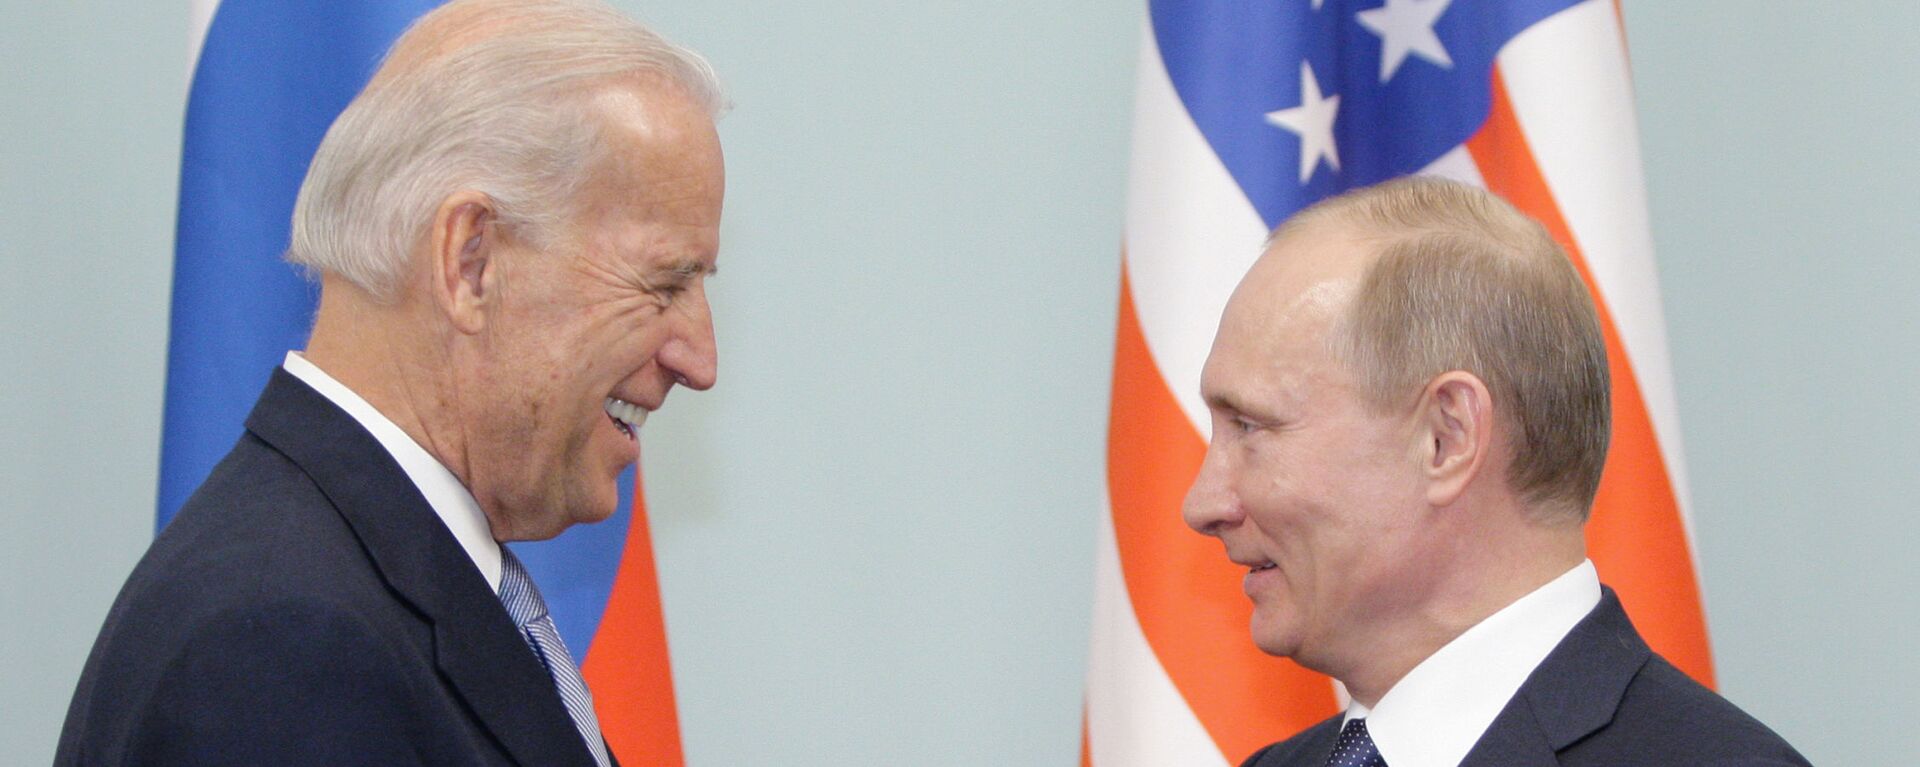 Cuộc gặp giữa thủ tướng Nga Vladimir Putin và phó tổng thống Hoa Kỳ Joe Biden, năm 2011 - Sputnik Việt Nam, 1920, 02.06.2021